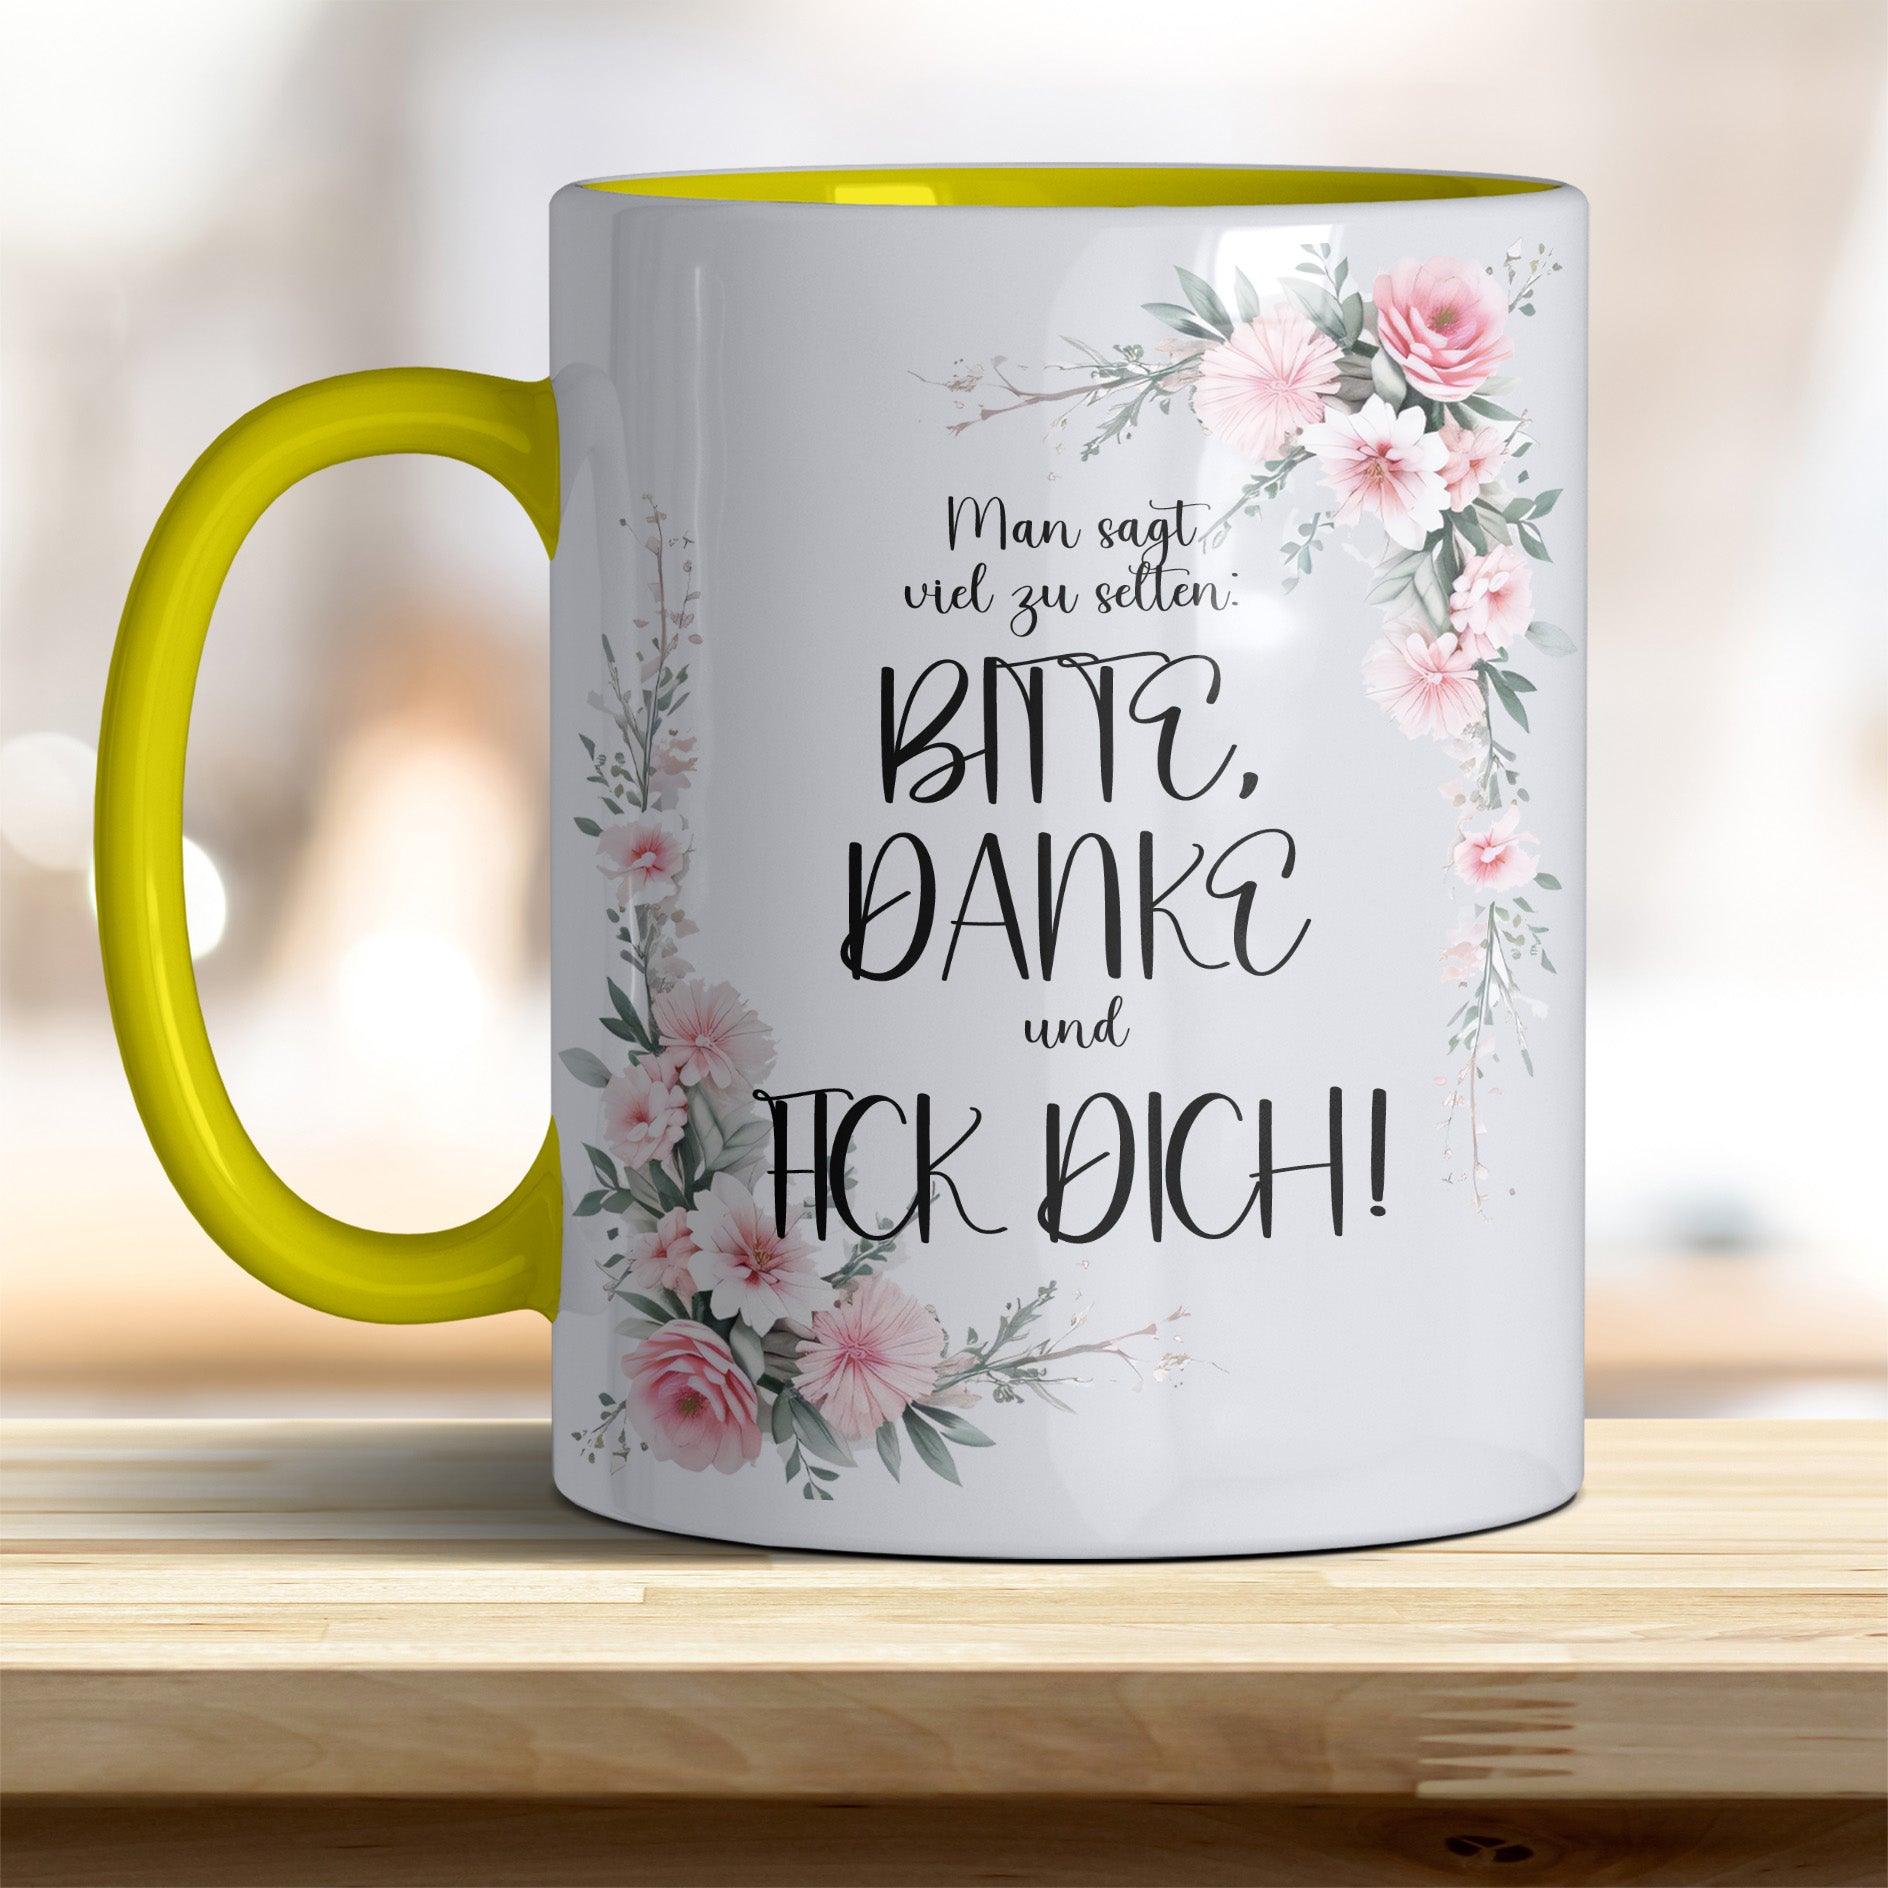 Man sagt viel zu selten, Bitte, Danke und F... Dich: Keramik-Kaffeebecher – Humorvoll & Hochwertig